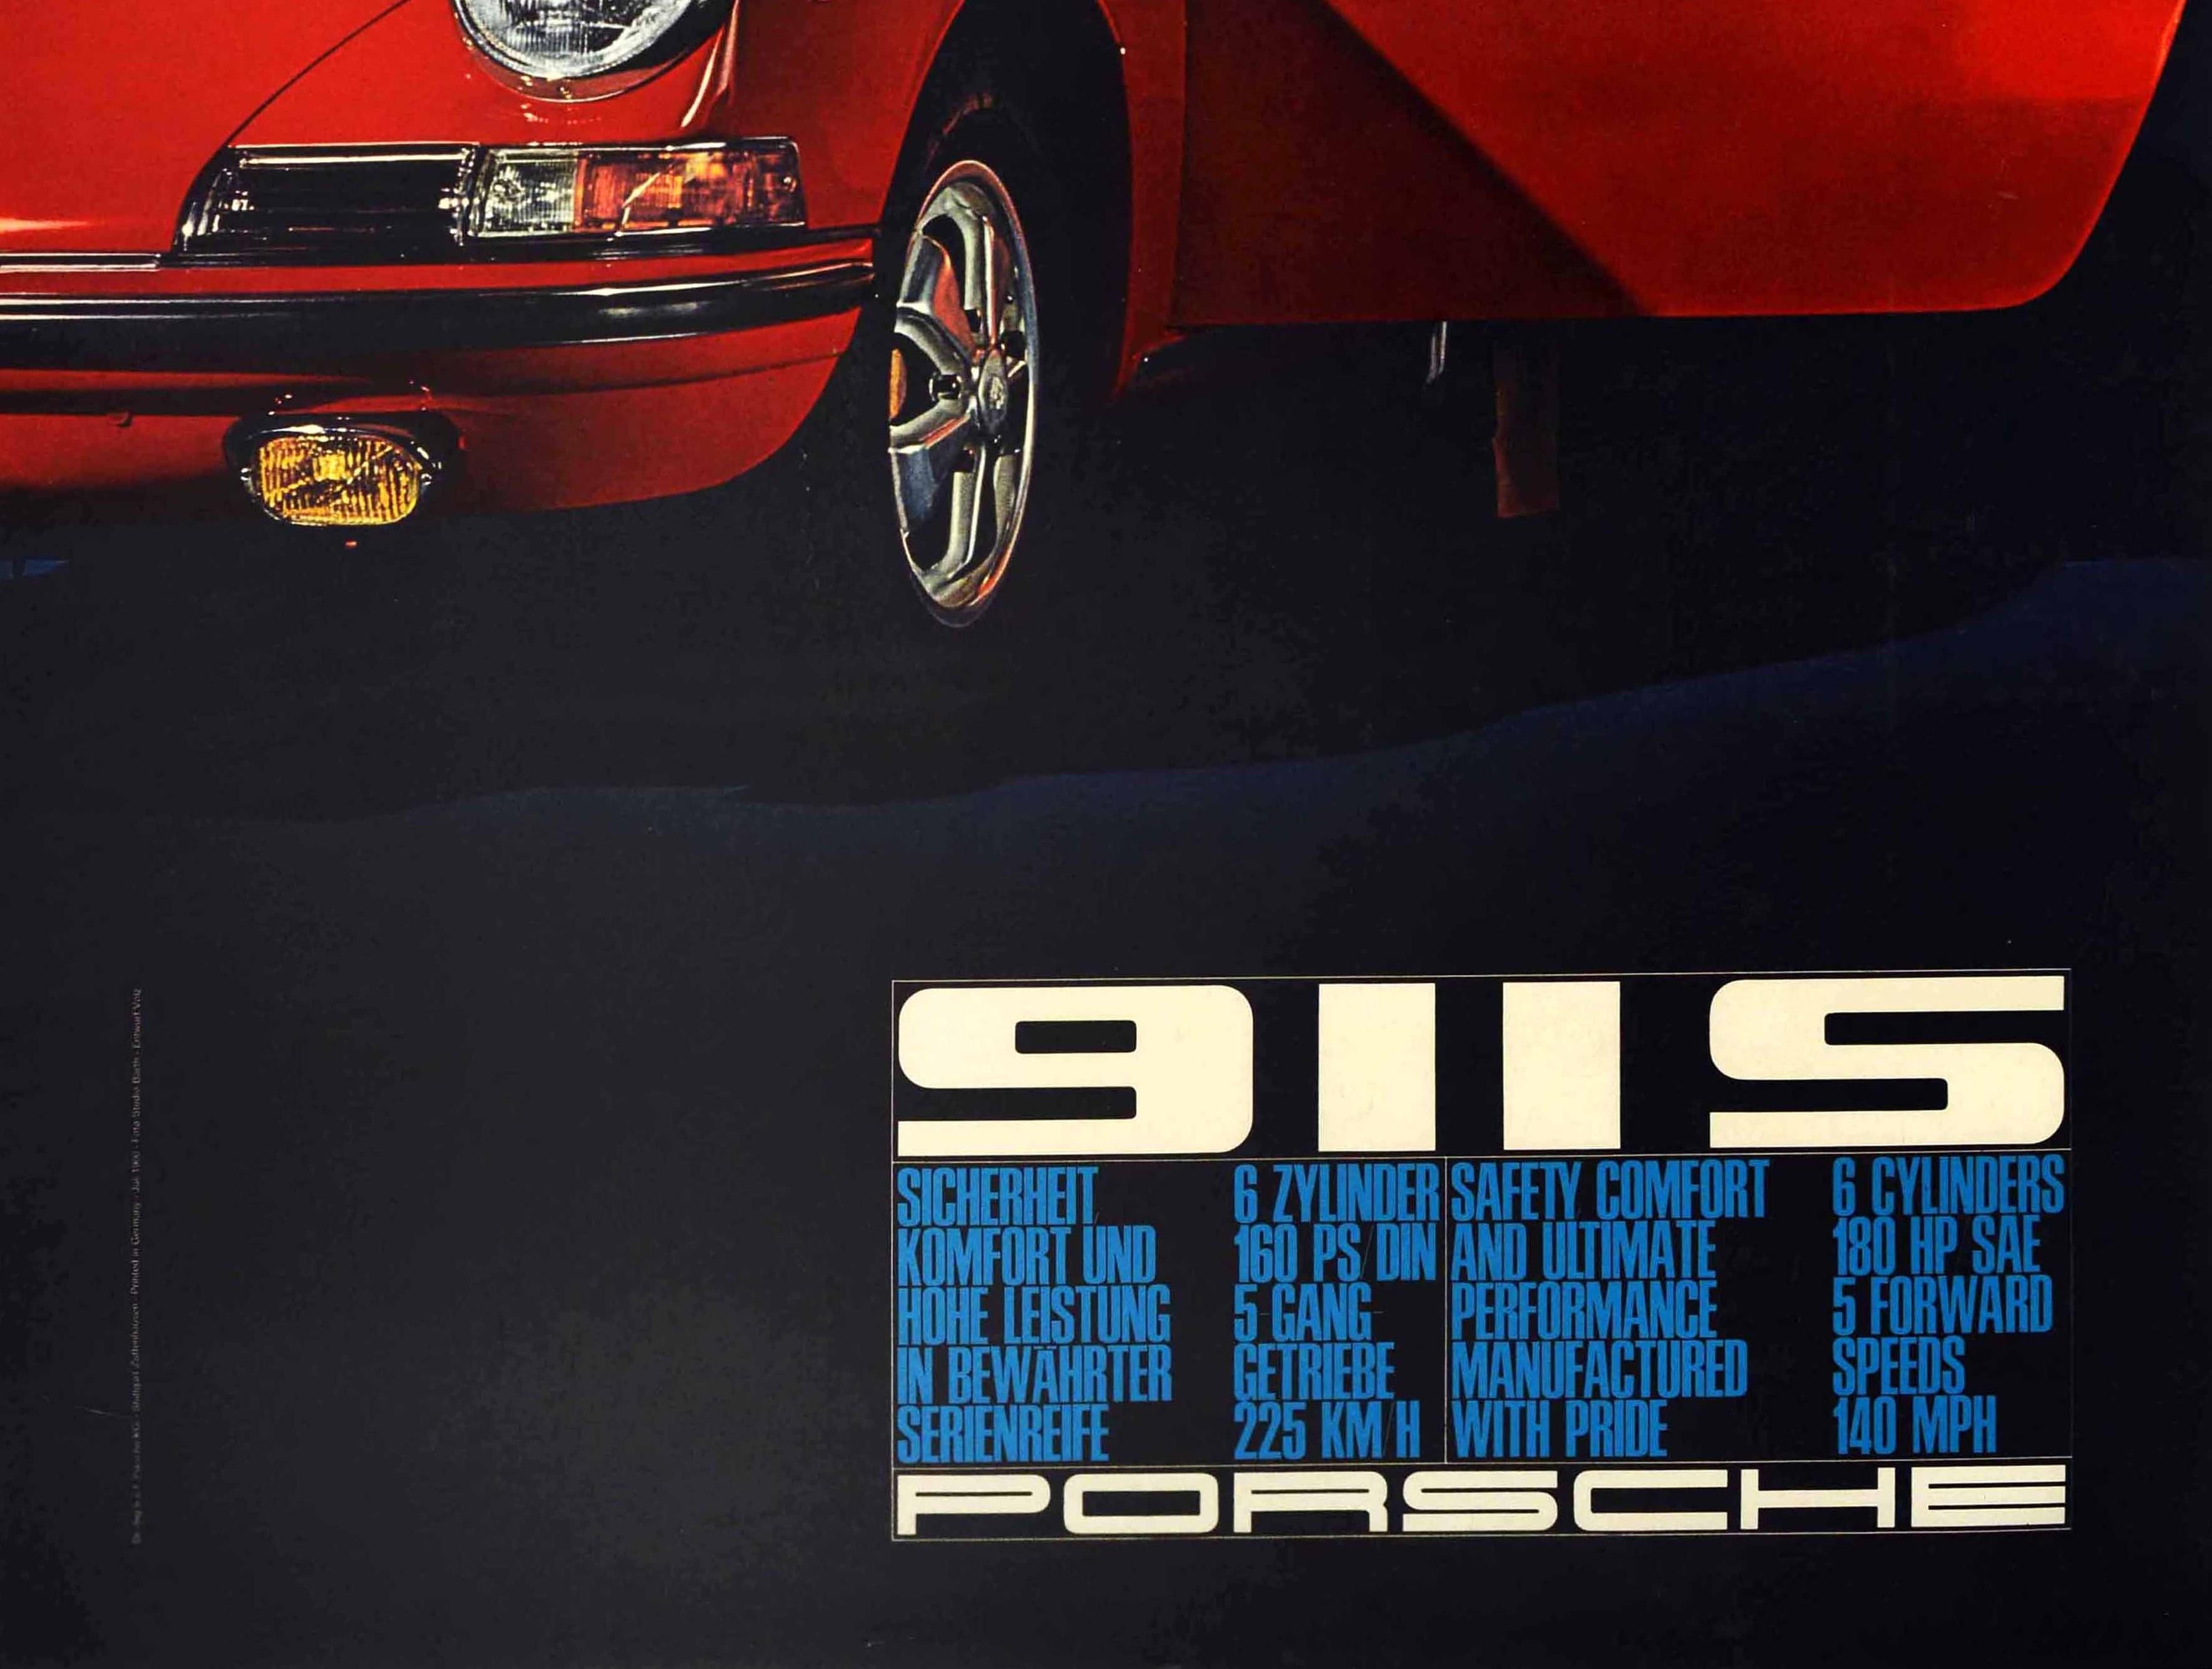 1966 911s